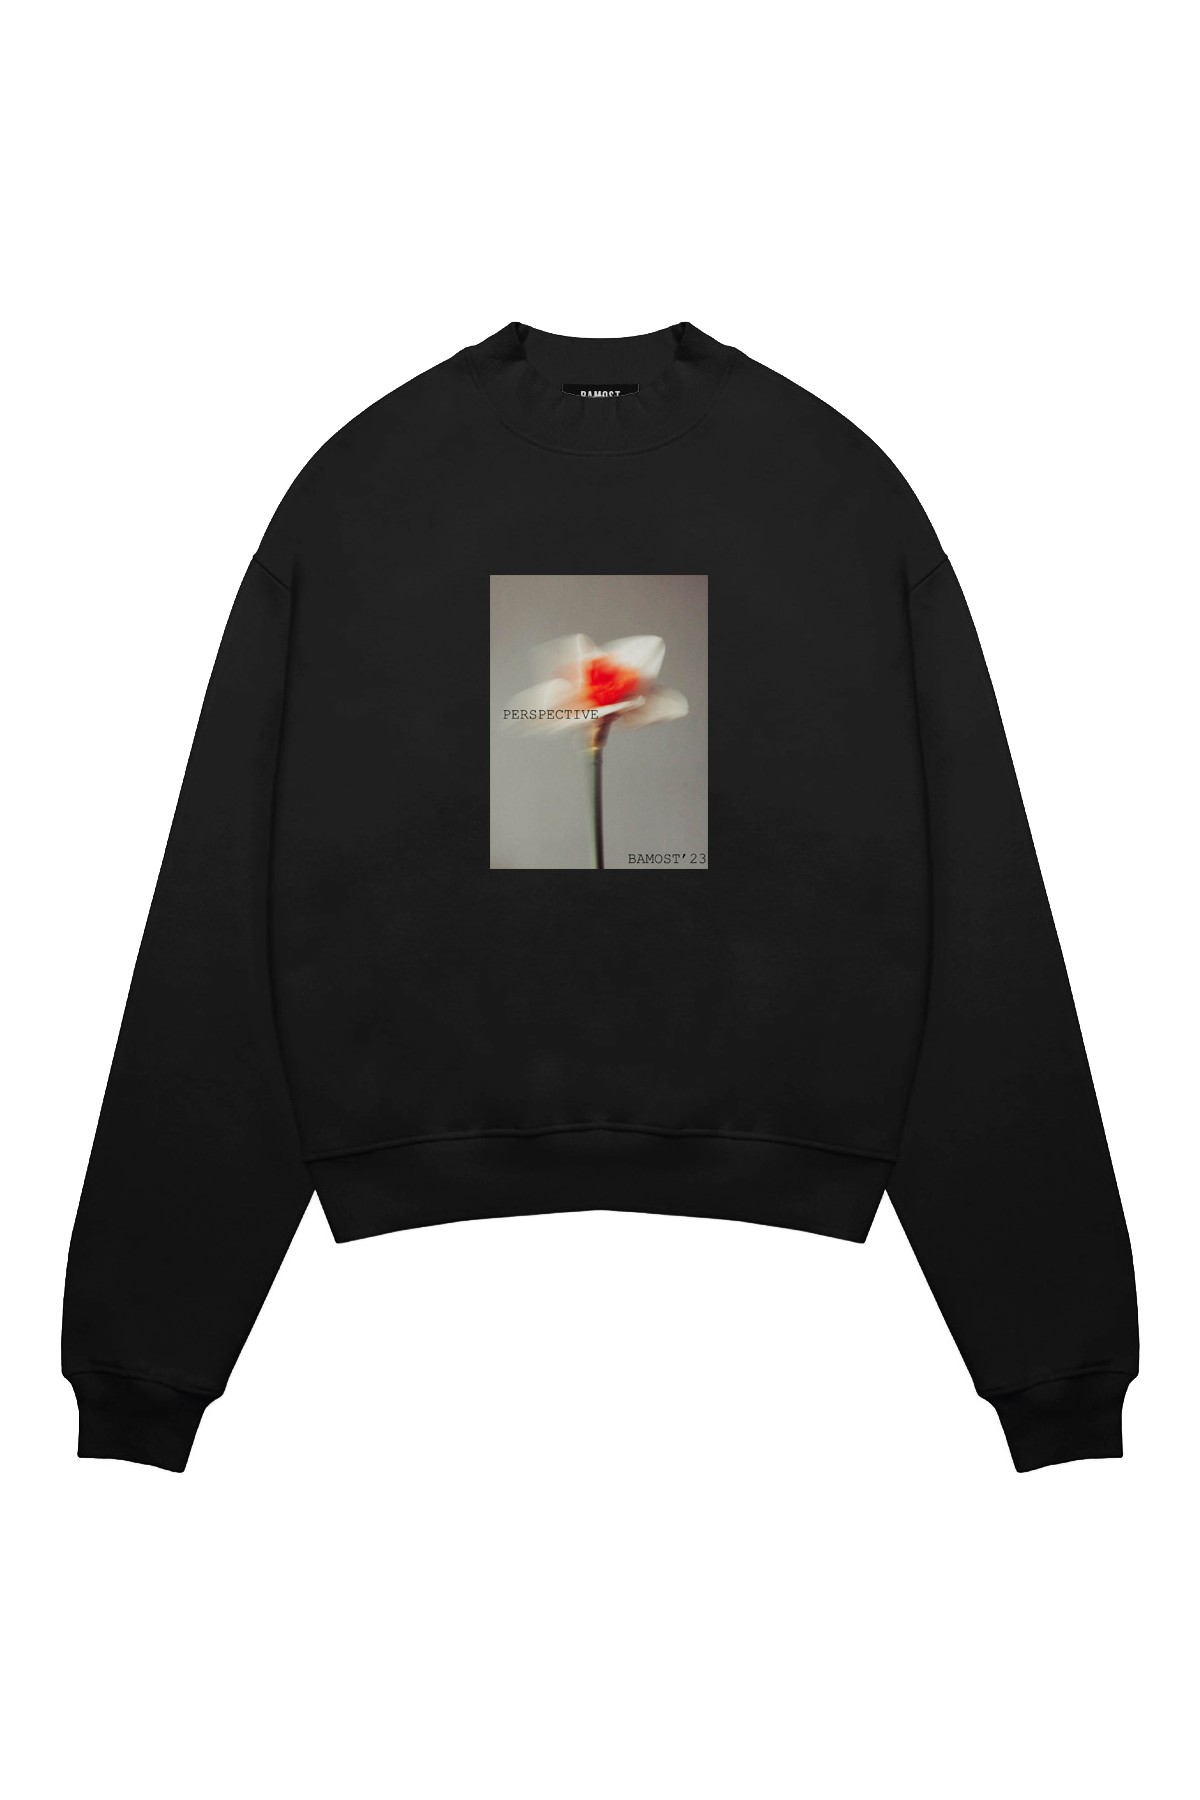 Perspective'2 - Oversize Sweatshirt - BLACK